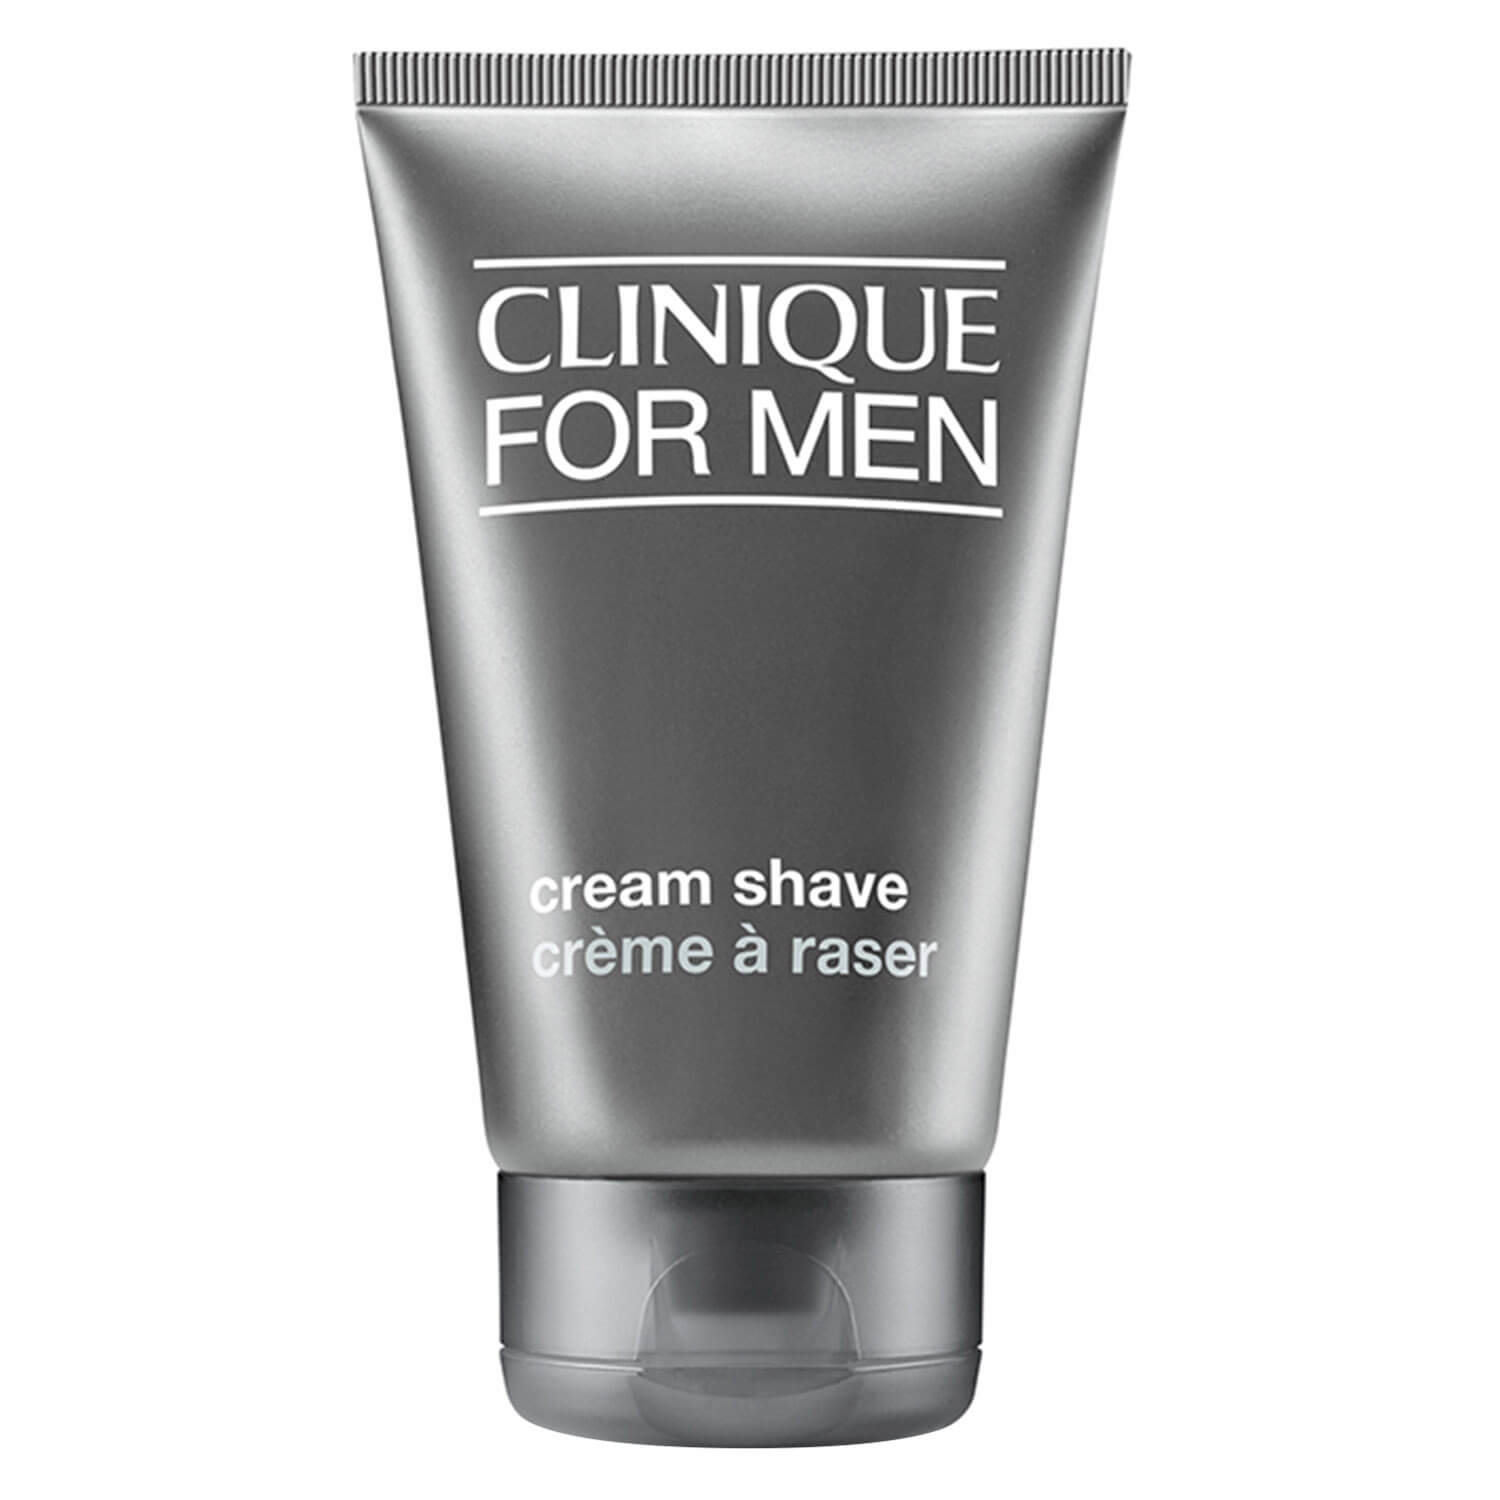 Produktbild von Clinique For Men - Cream Shave